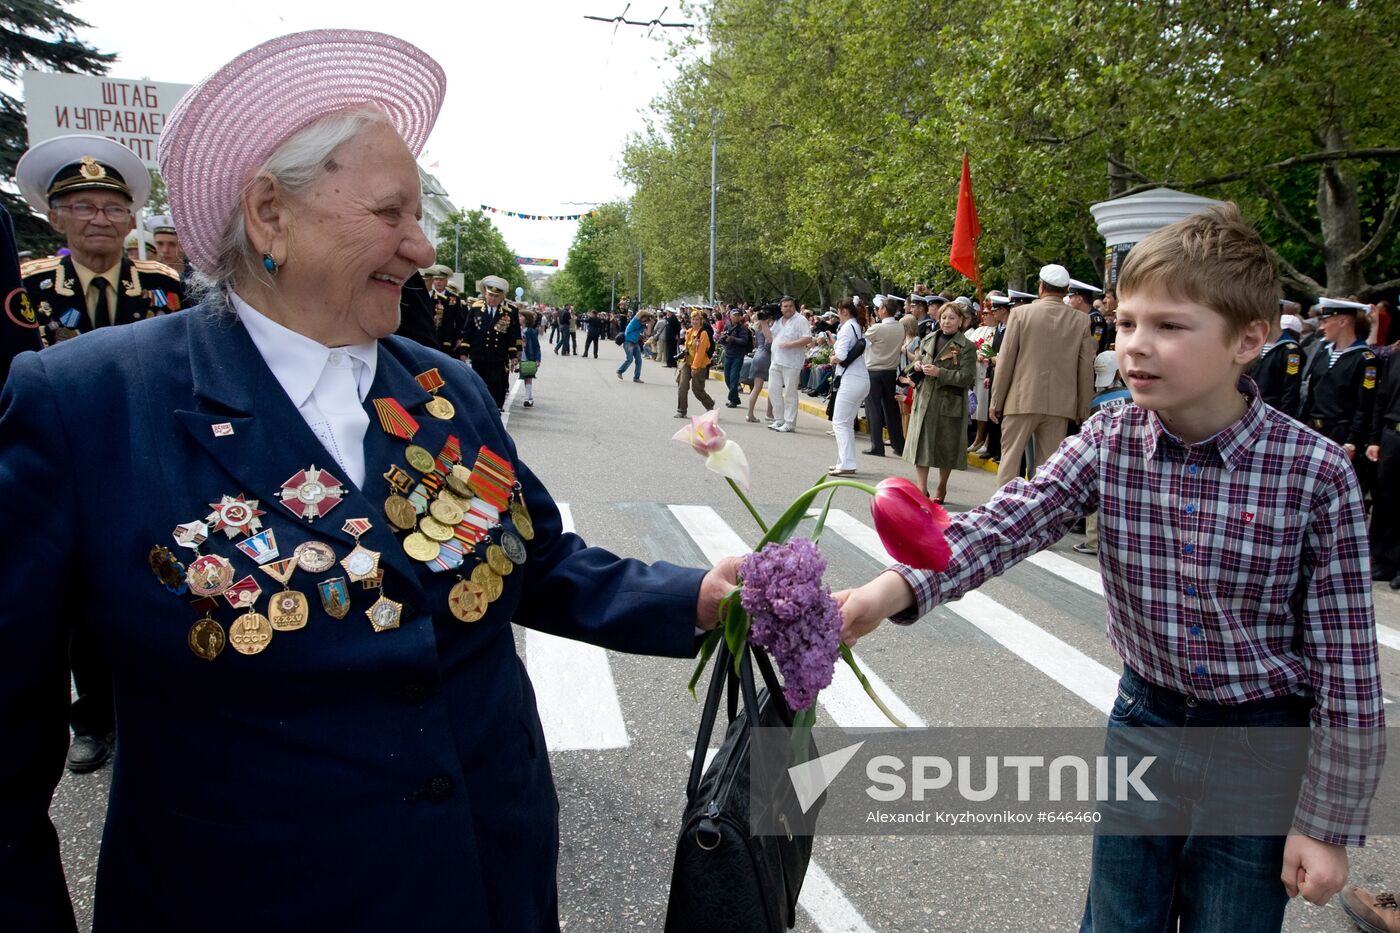 Victory Day celebration in Sevastopol